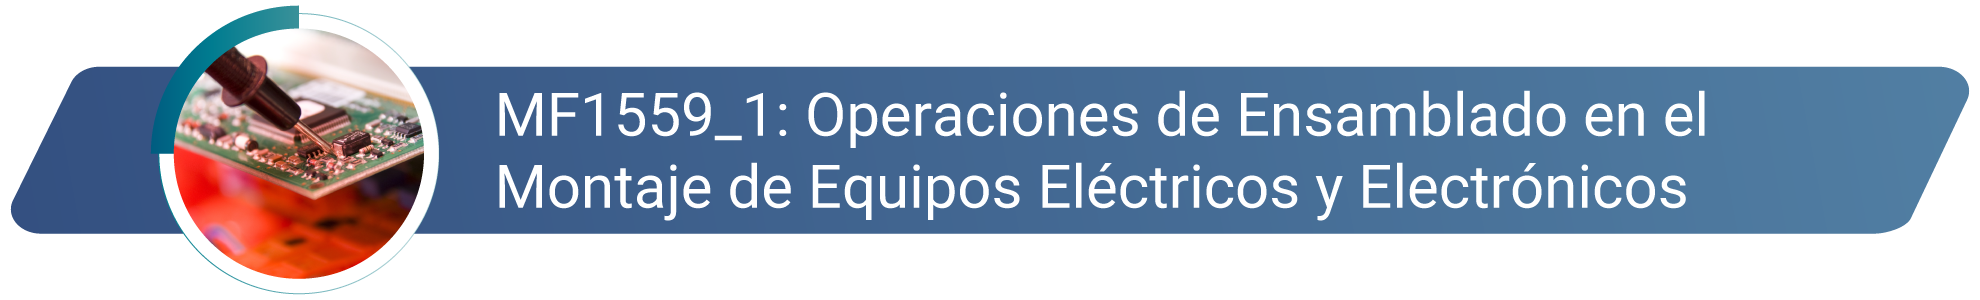 MF1559_1 Operaciones de Ensamblado de Equipos Eléctricos y Electrónicos